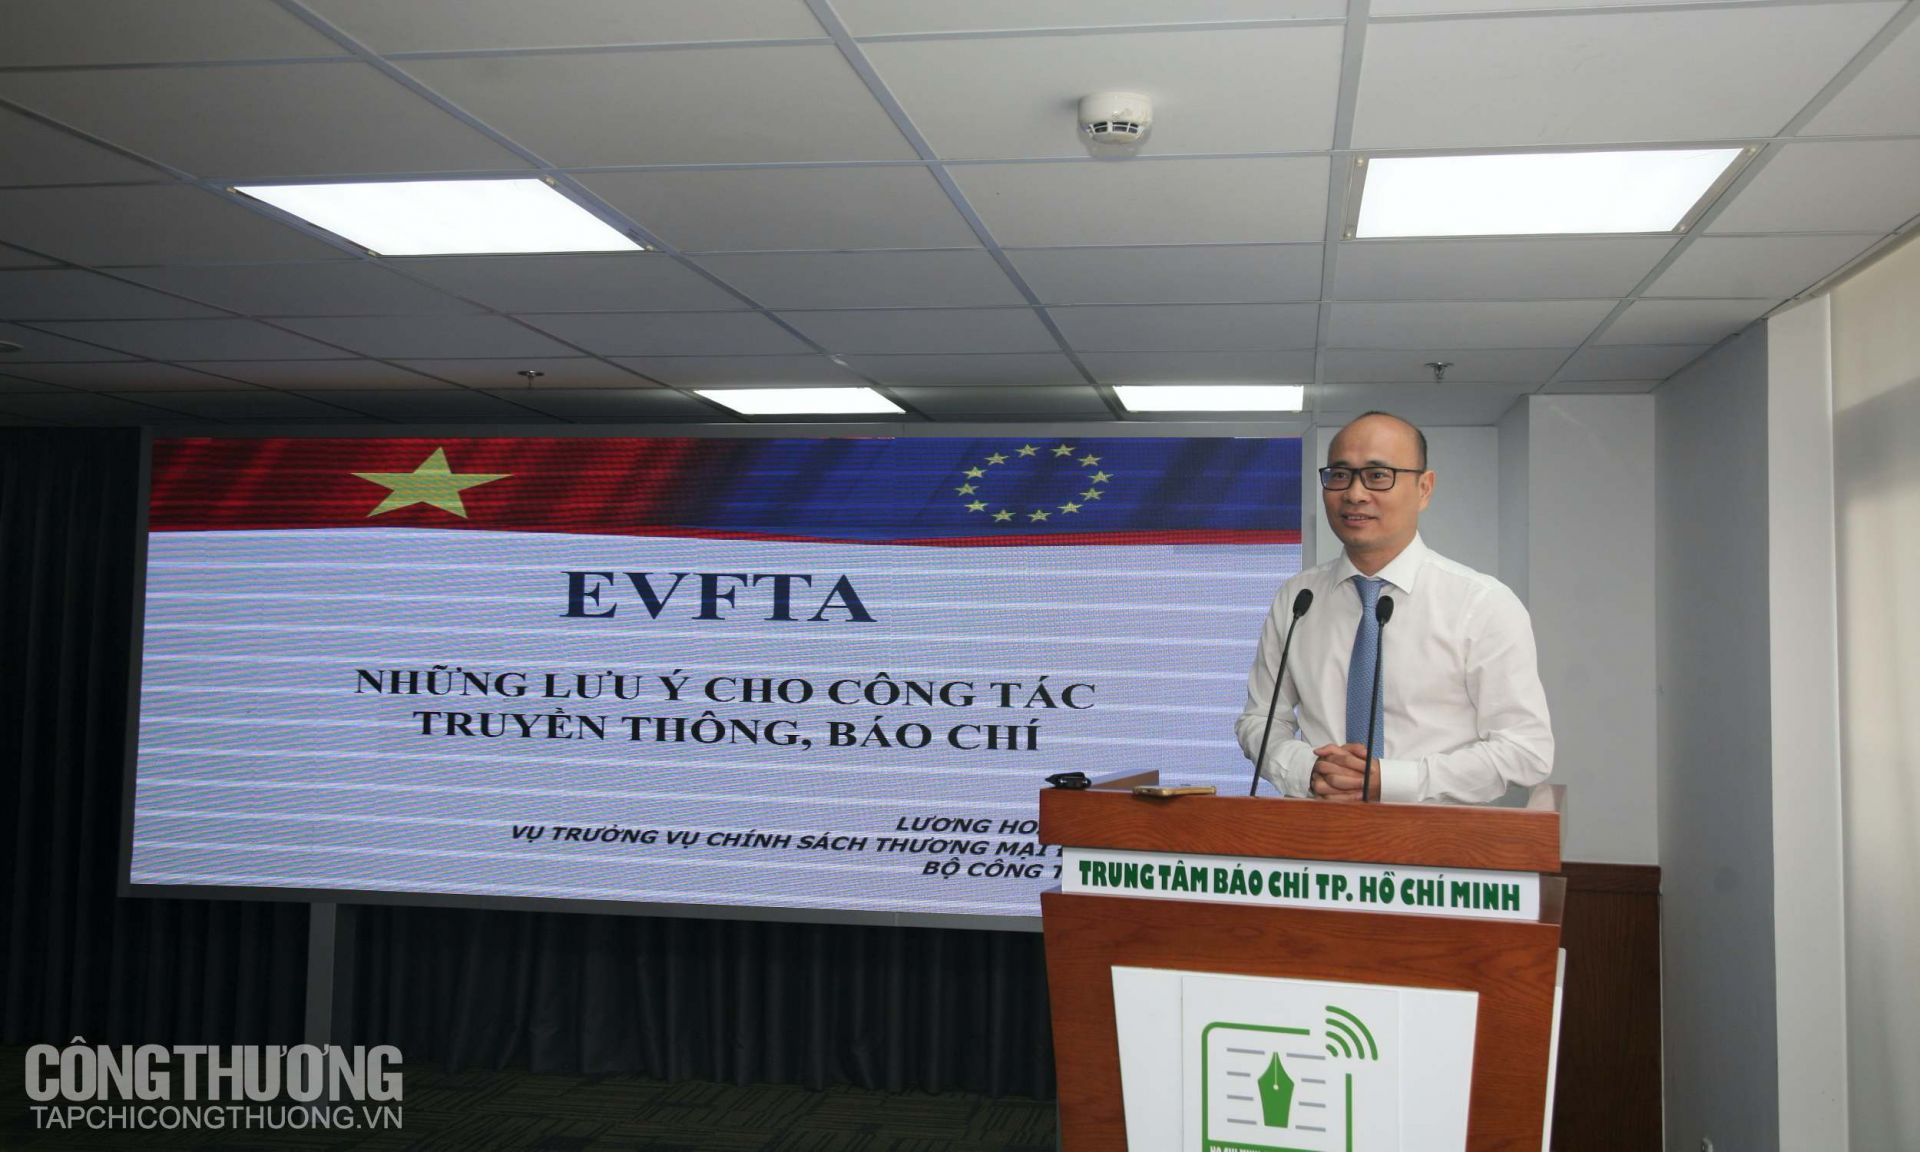 Ông Lương Hoàng Thái - Vụ trưởng Vụ Chính sách thương mại đa biên, Bộ Công Thương trình bày tổng quan về EVFTA